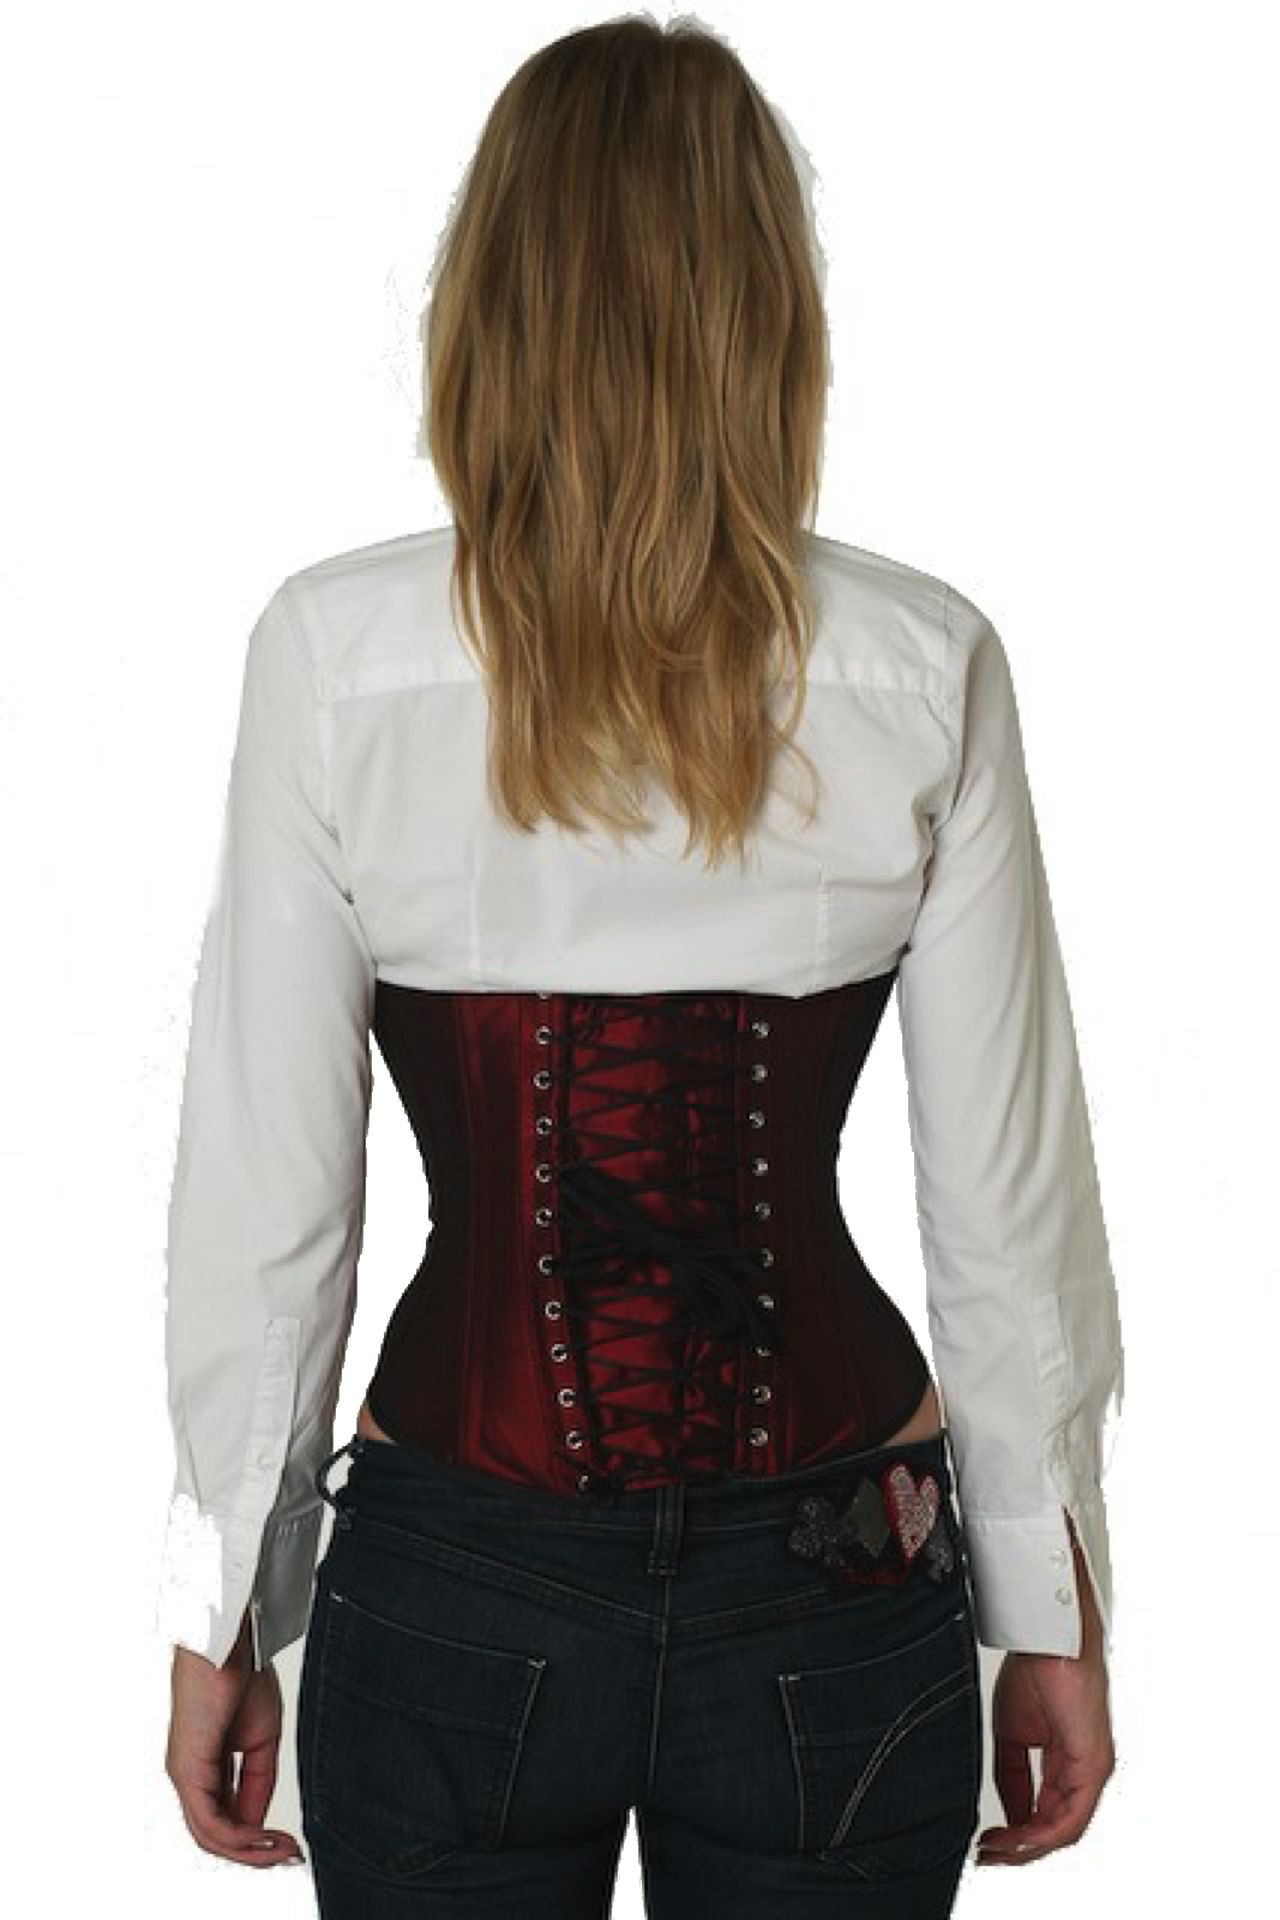 Satijn corset bordeaux rood onderborst Korset su05